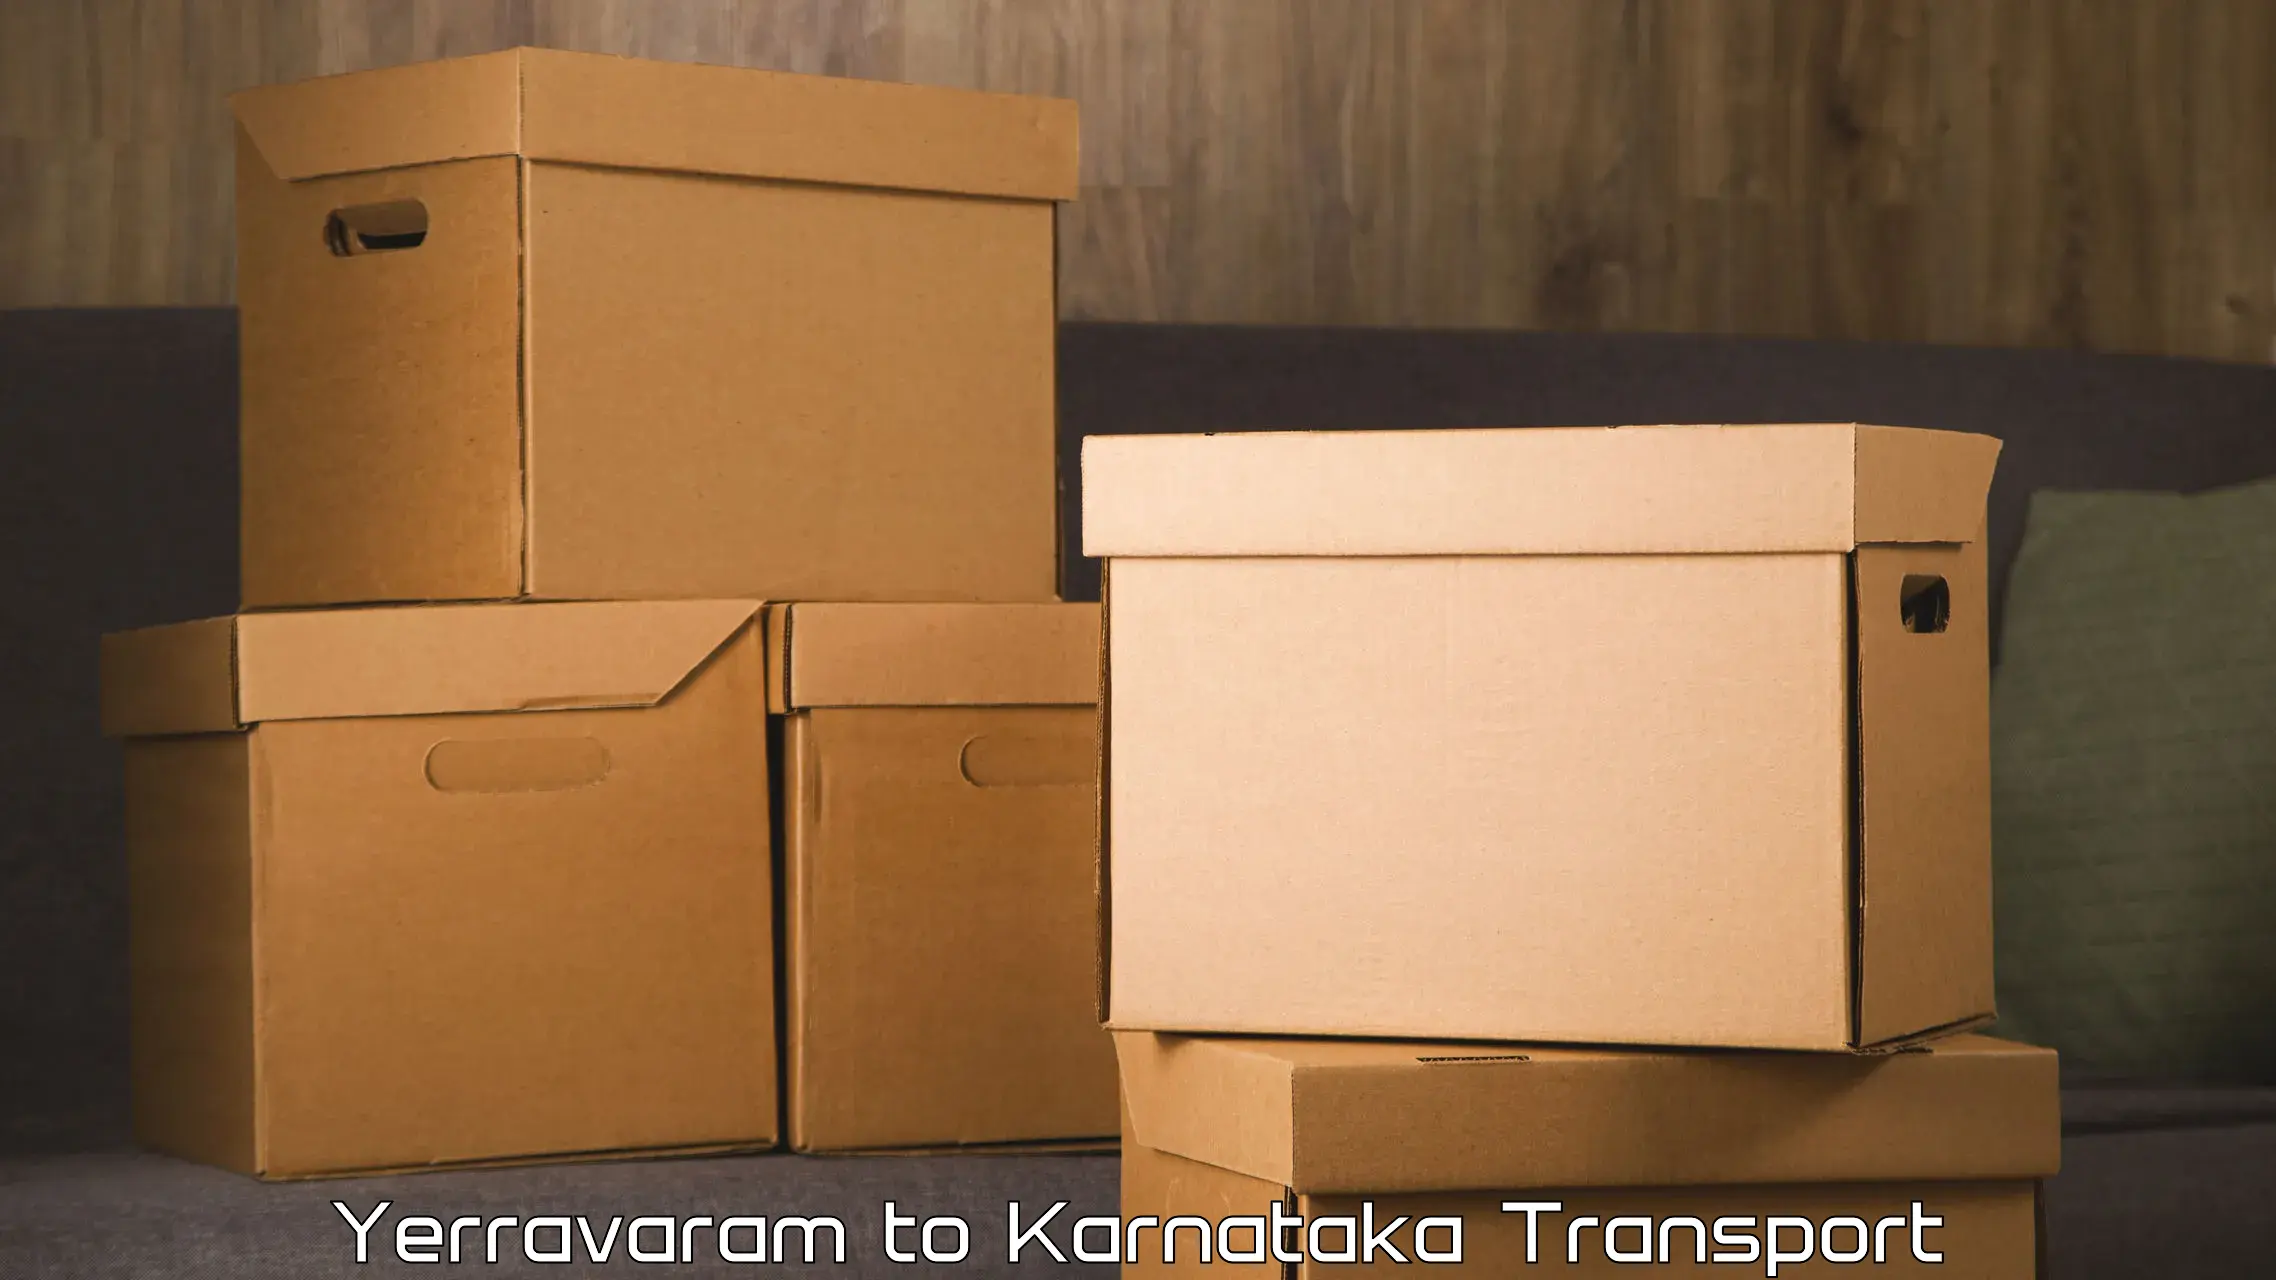 Vehicle parcel service Yerravaram to Gangavathi